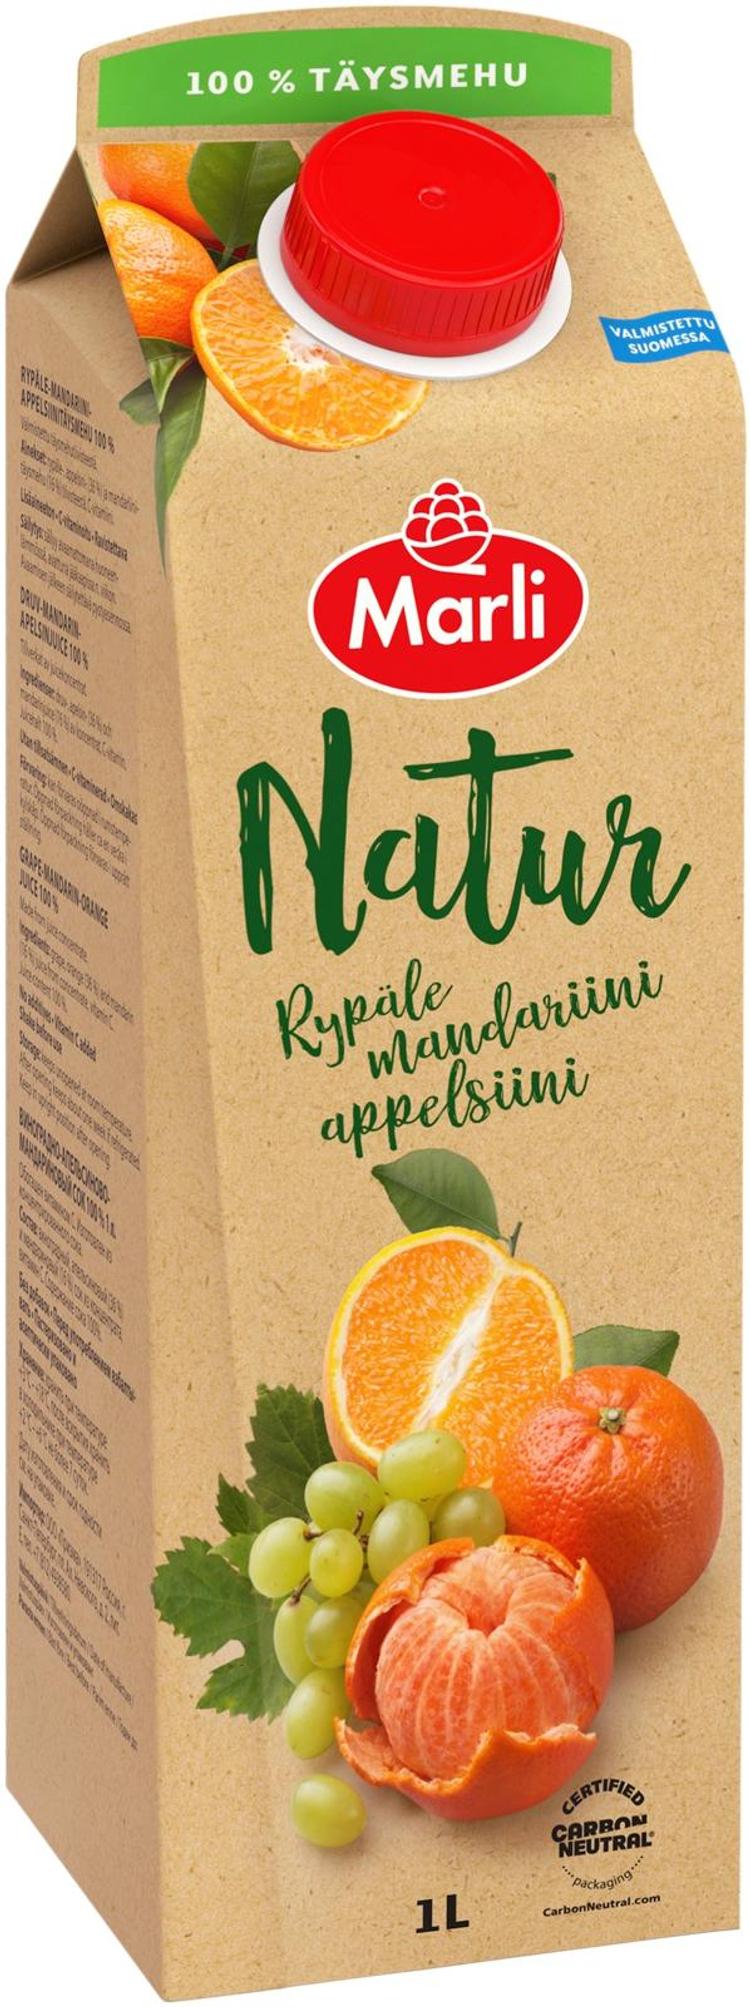 Marli Natur Rypäle-mandariini-appelsiinitäysmehu 100% 1 L